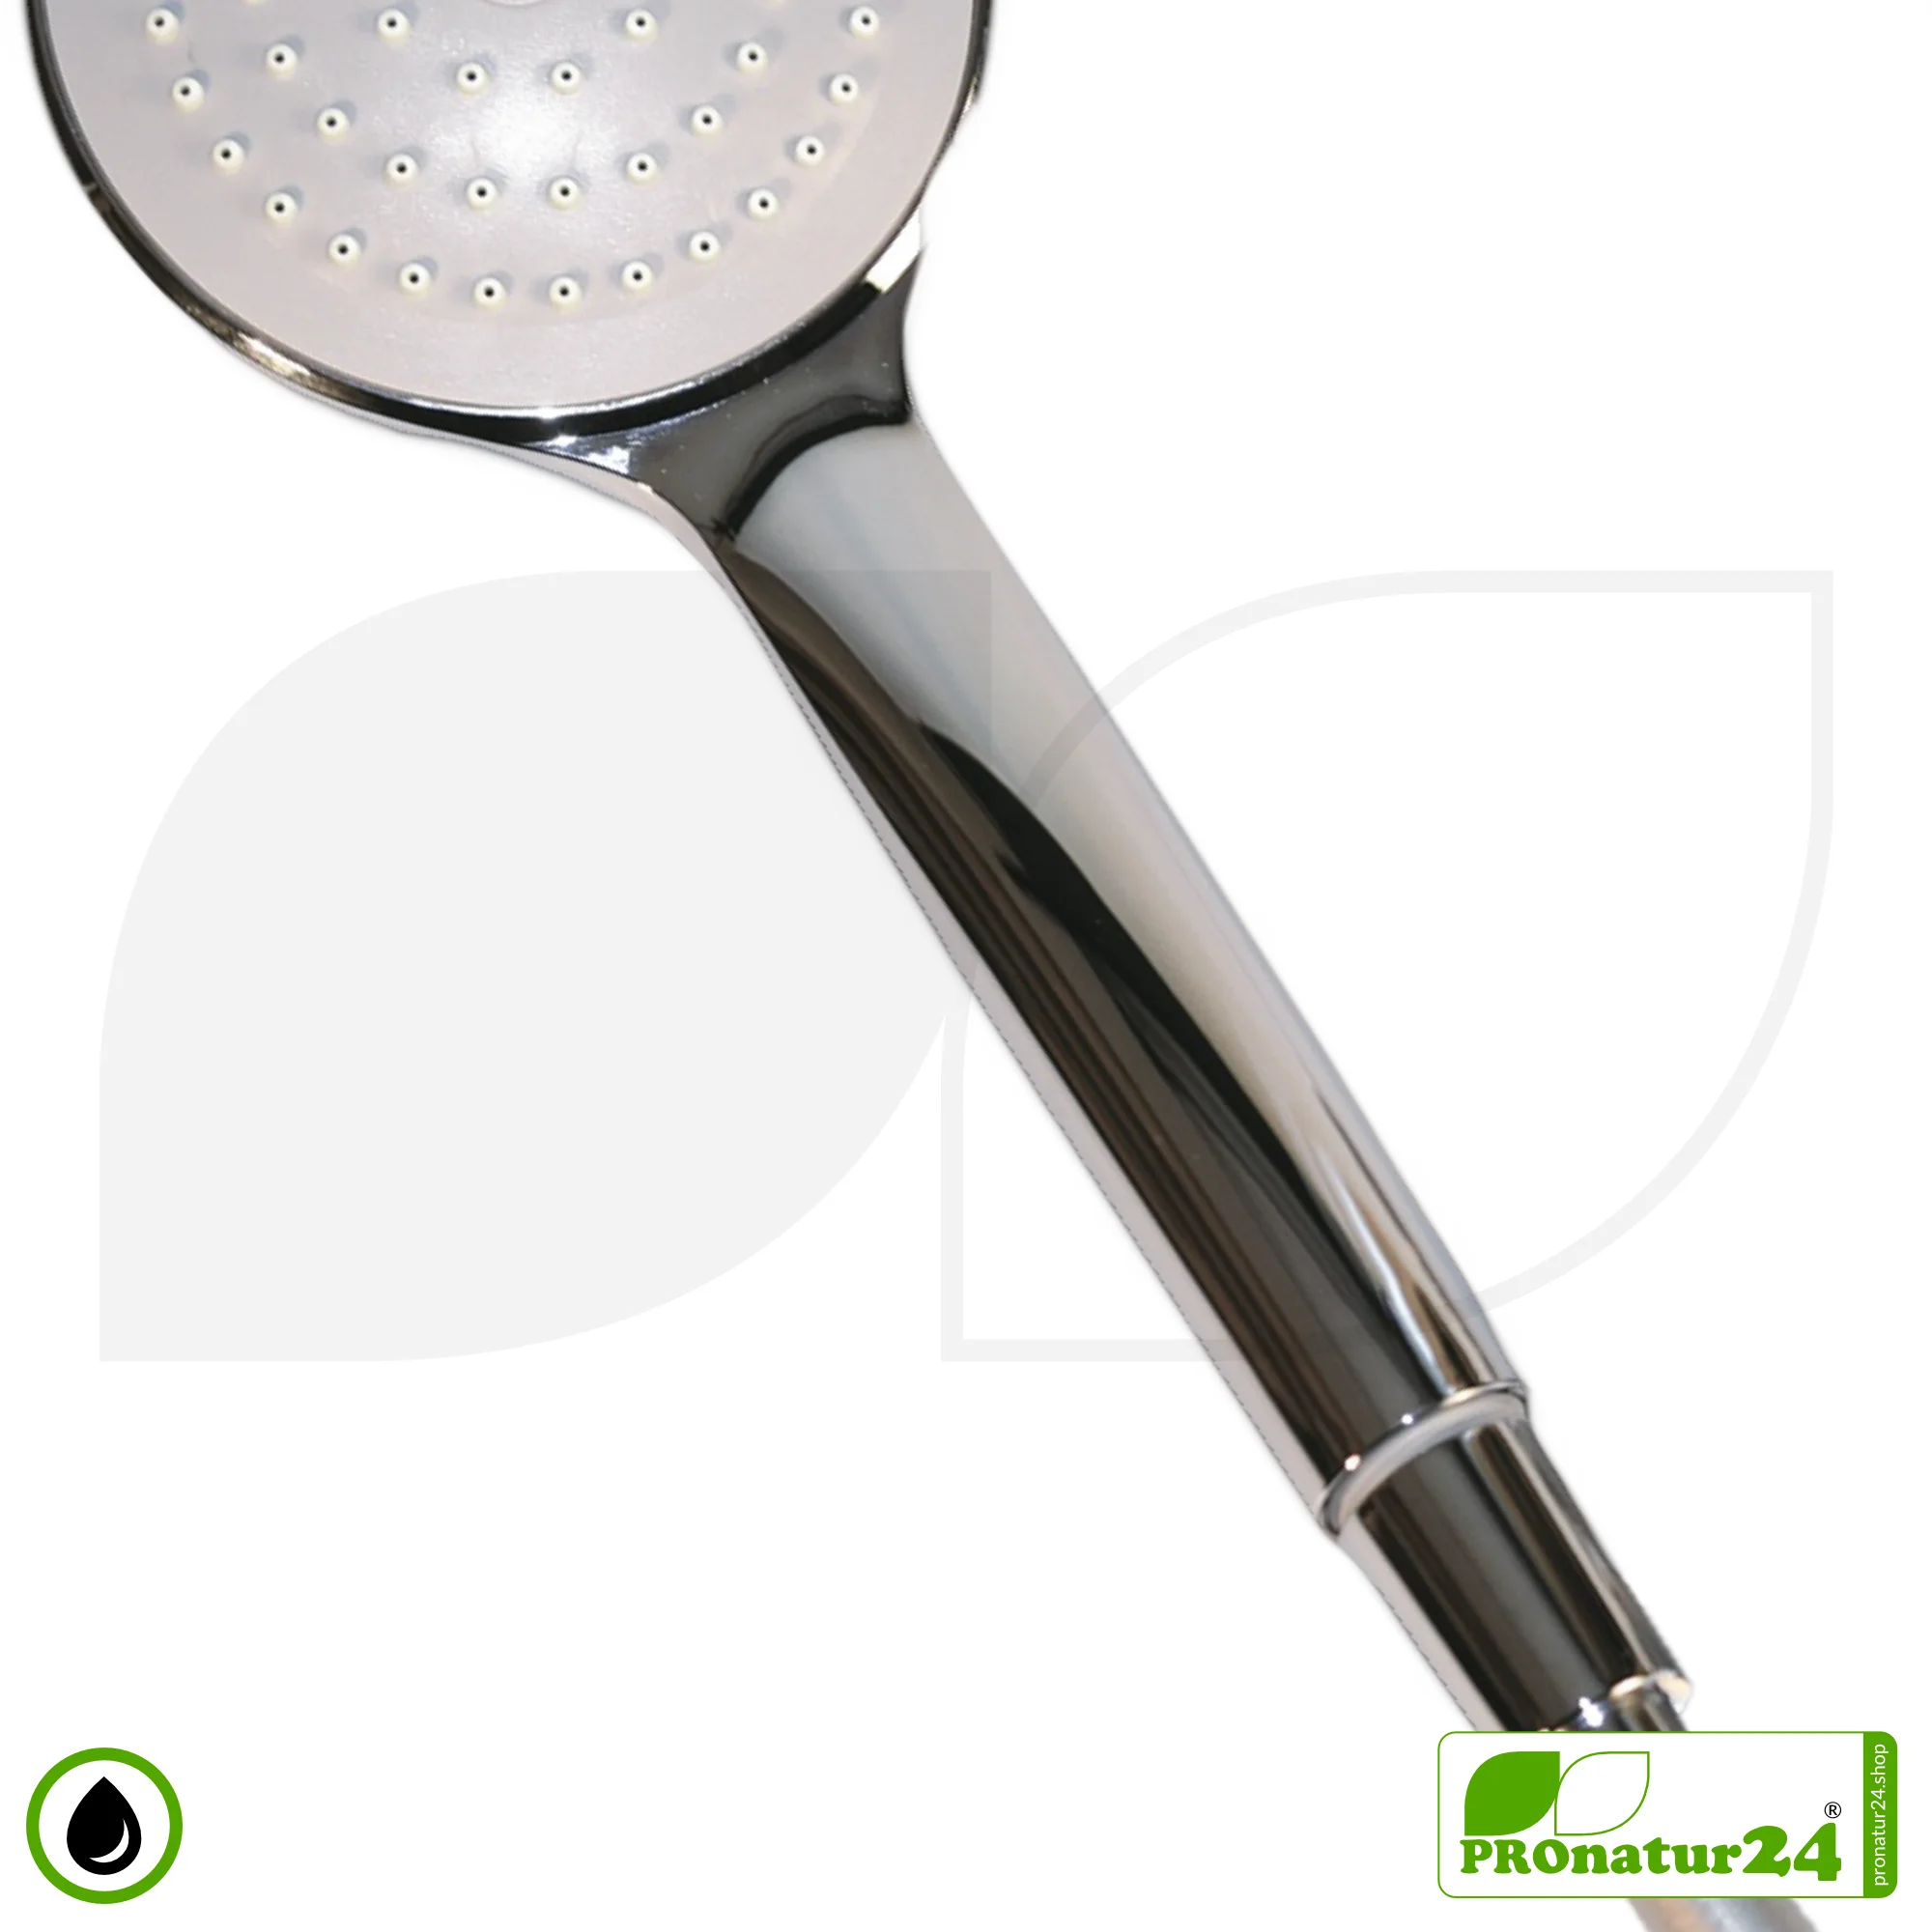 Standard Hand Shower | Handheld Shower Head by ecoturbino®